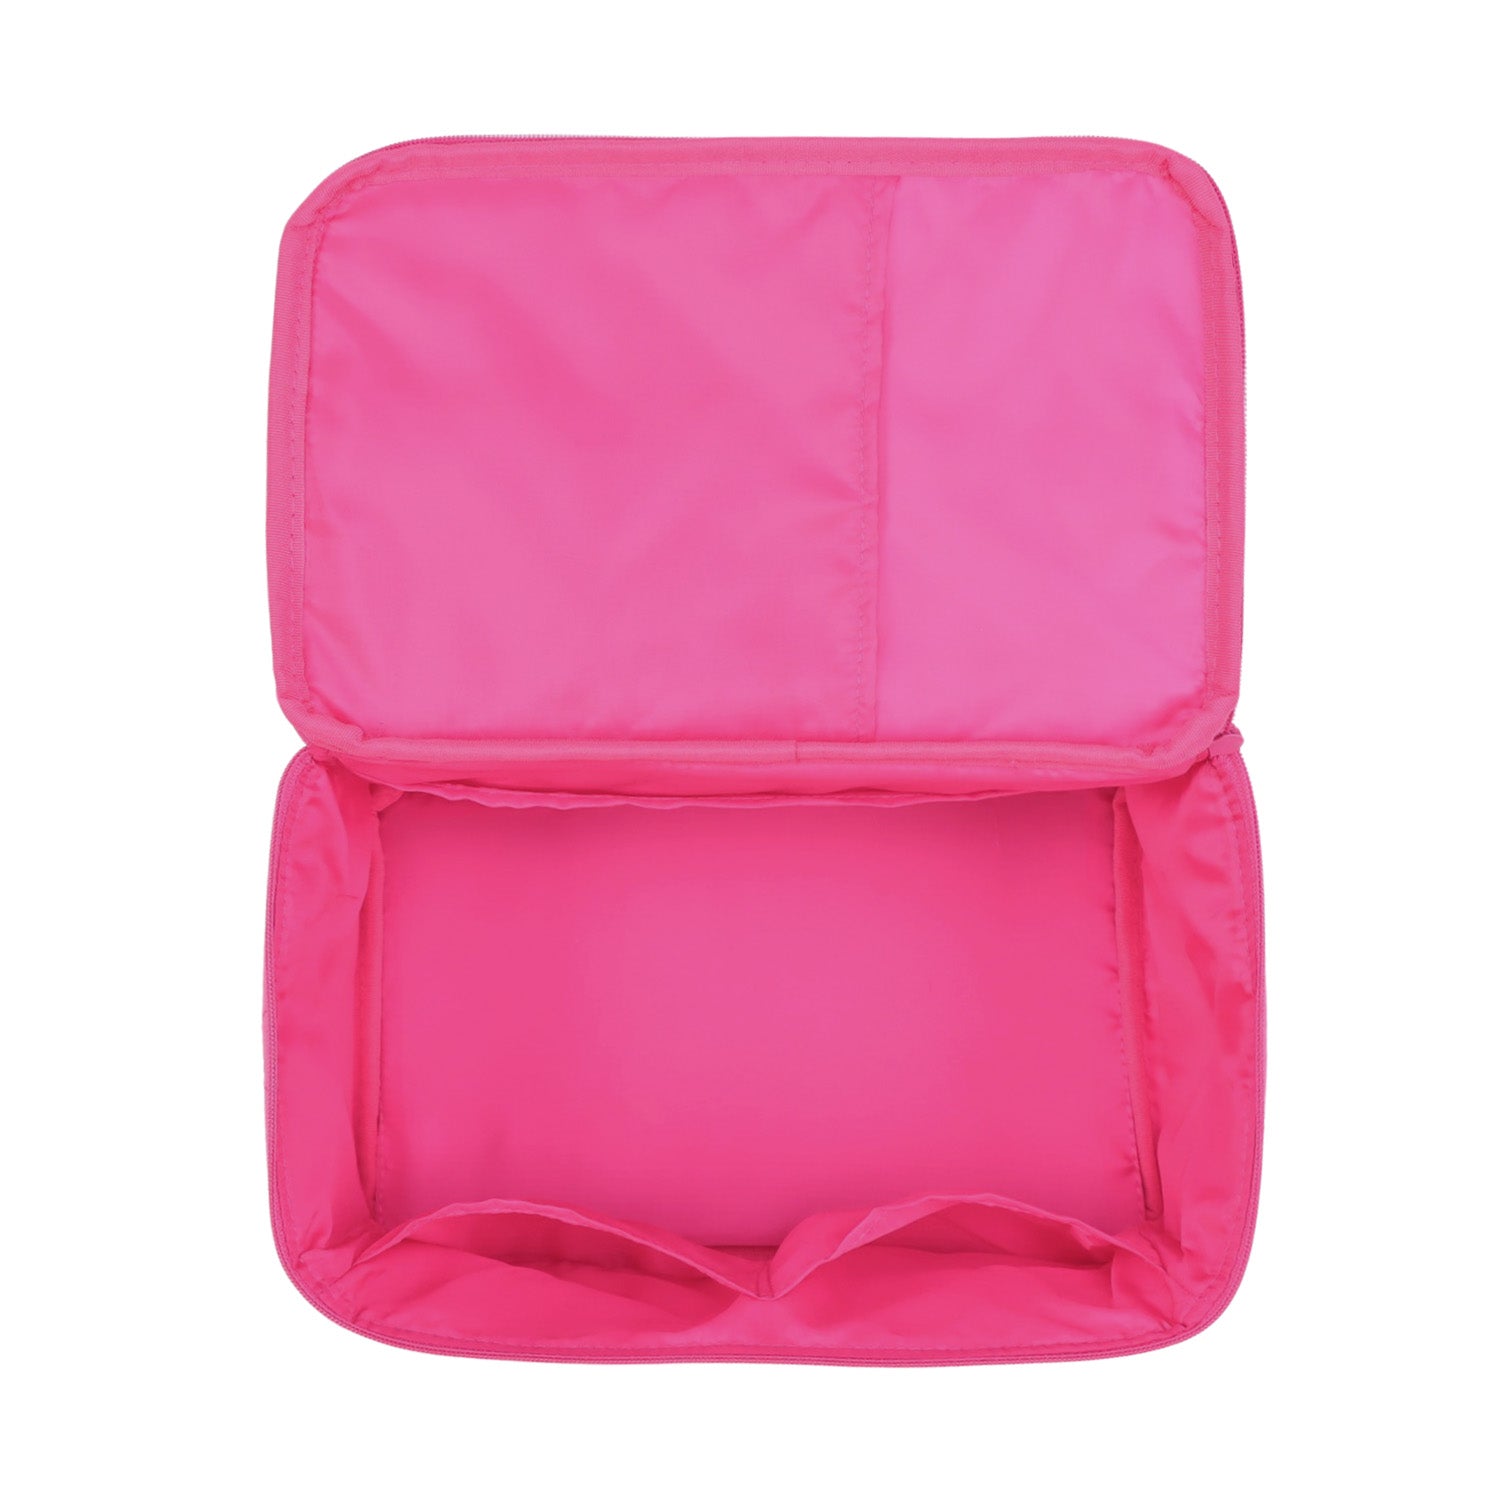 NaRaYa Be Simple Cosmetic Bag XL